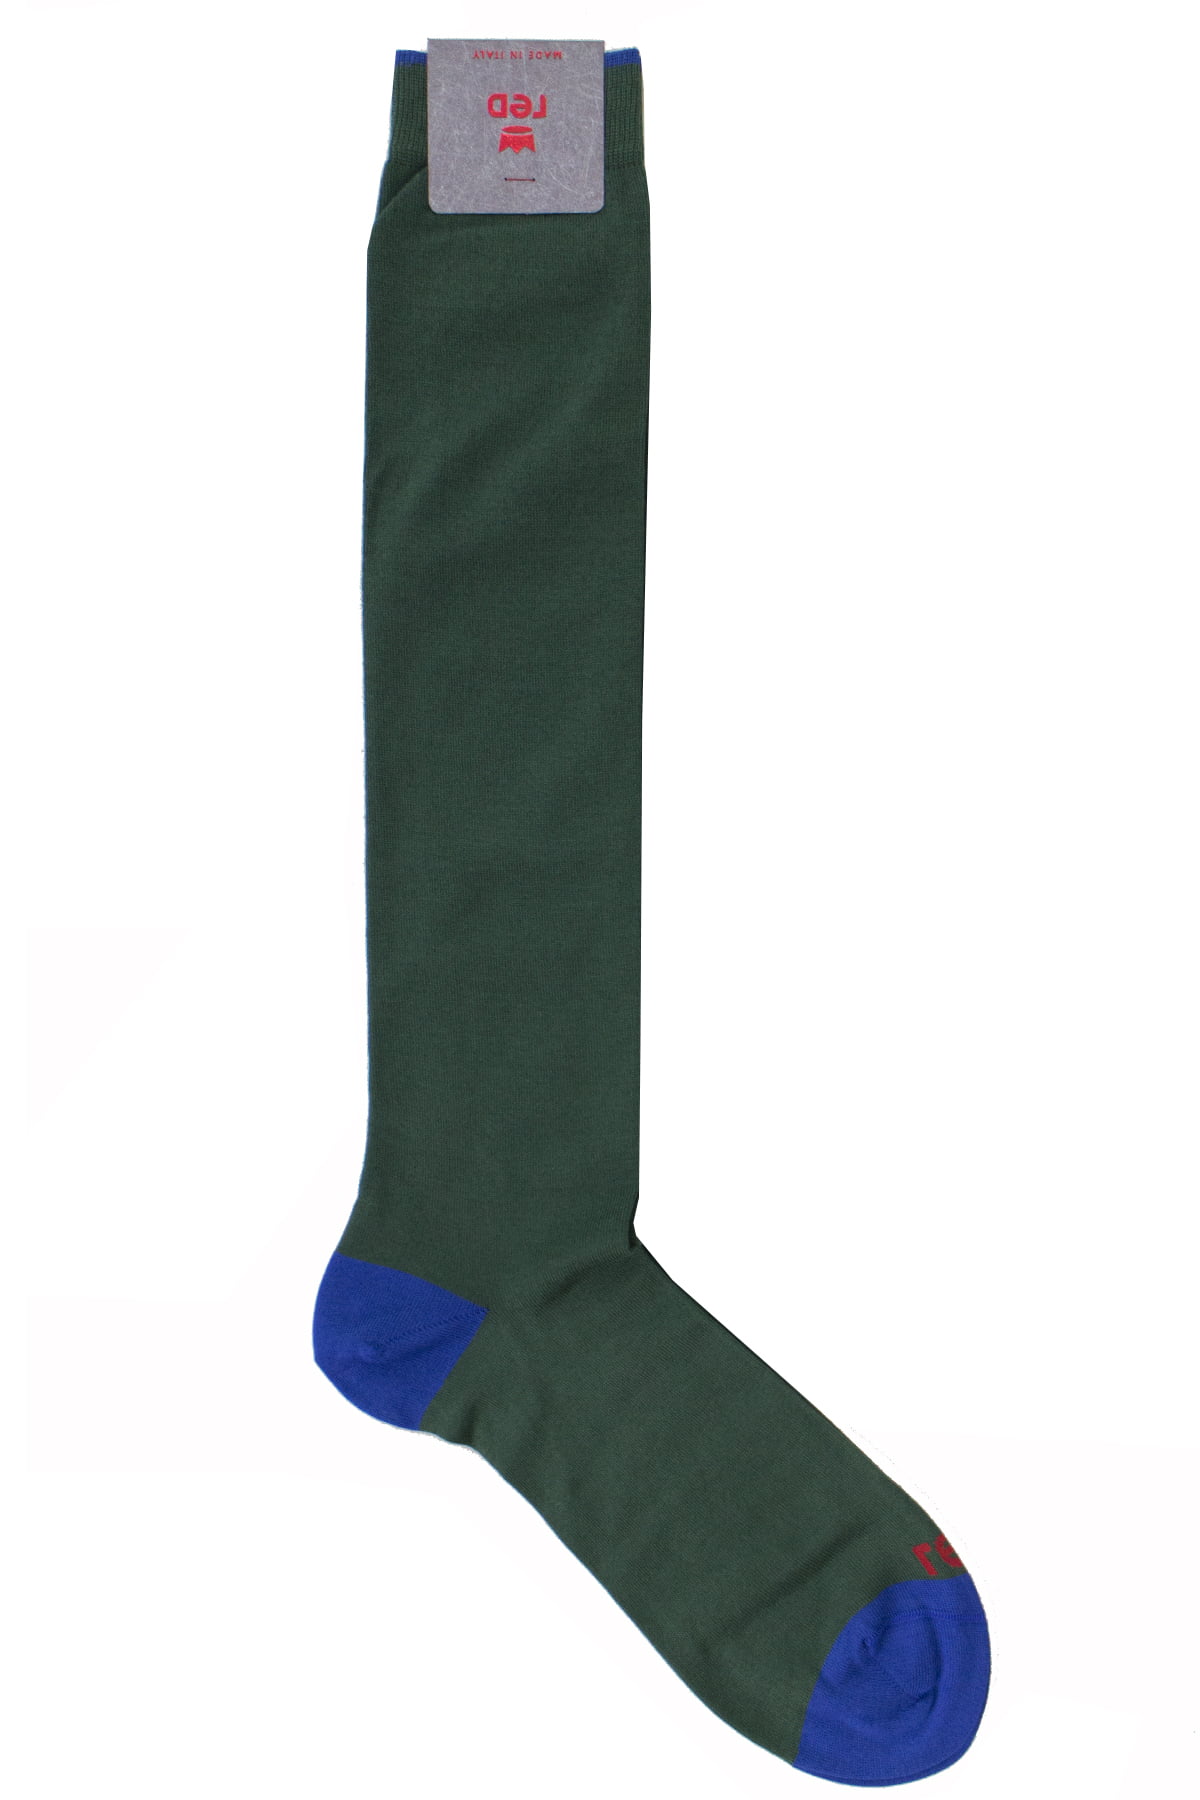 Calzini uomo verde tinta unita con bordino bluette invernali lunghezza ginocchio